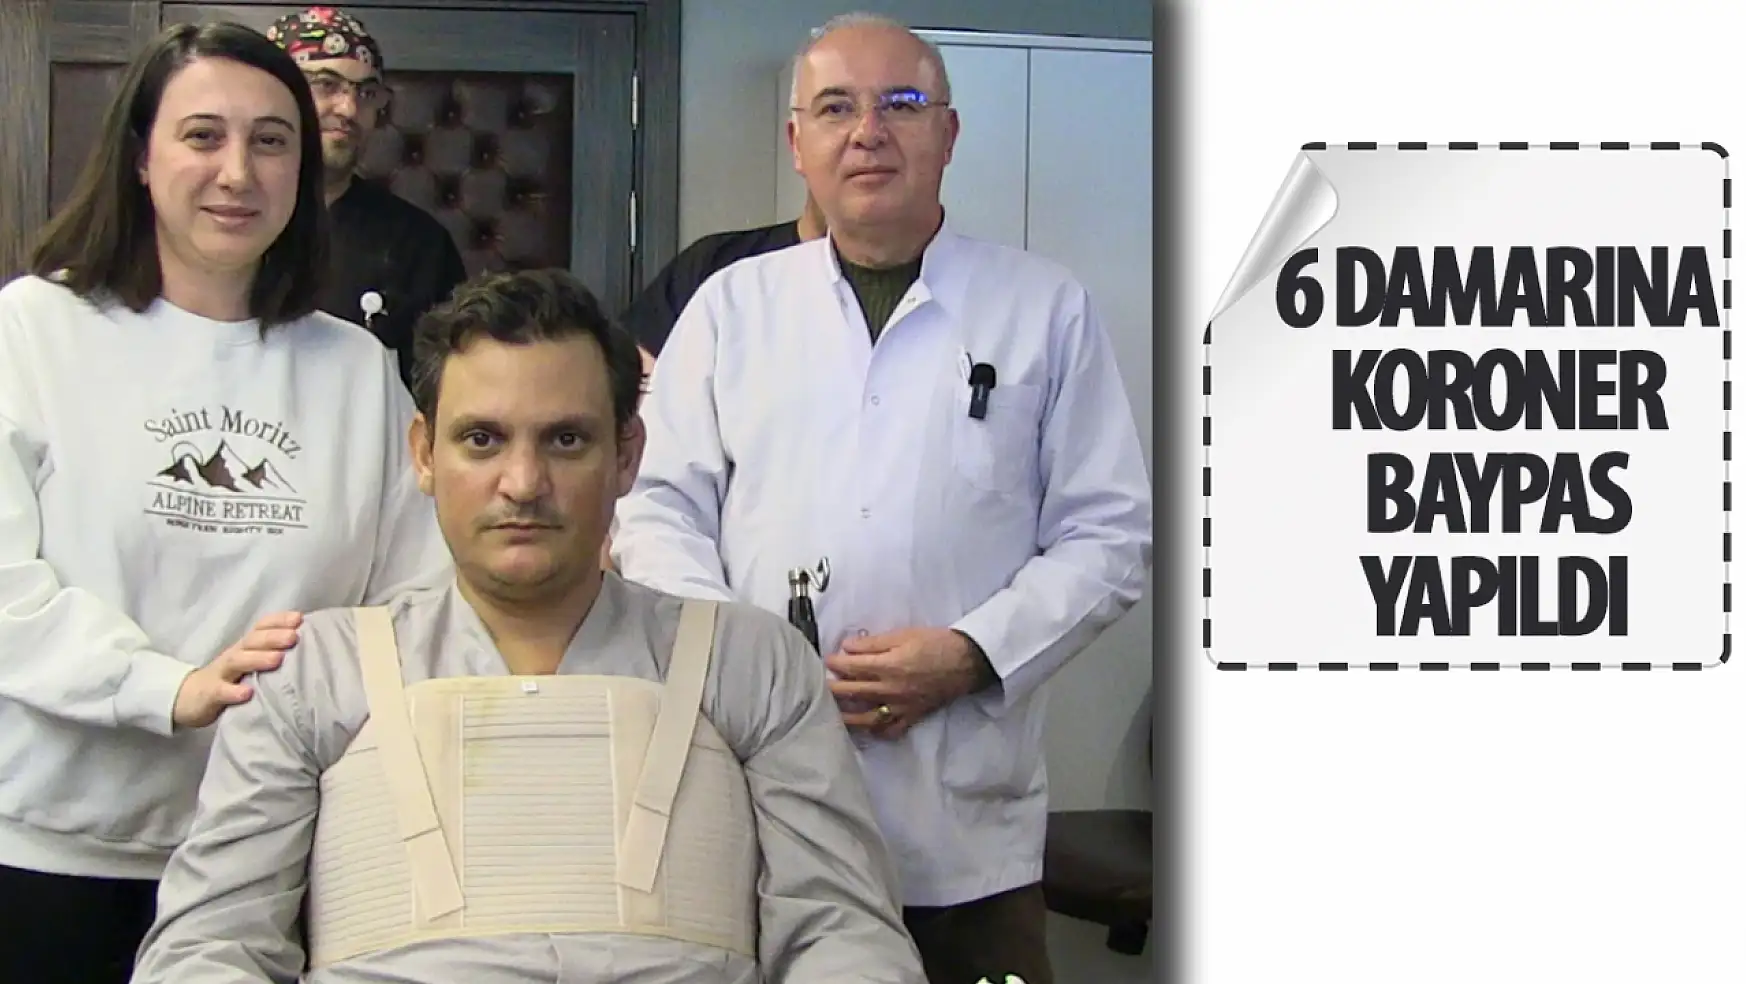 Konya'da bir hastanın 6 damarına koroner baypas yapıldı